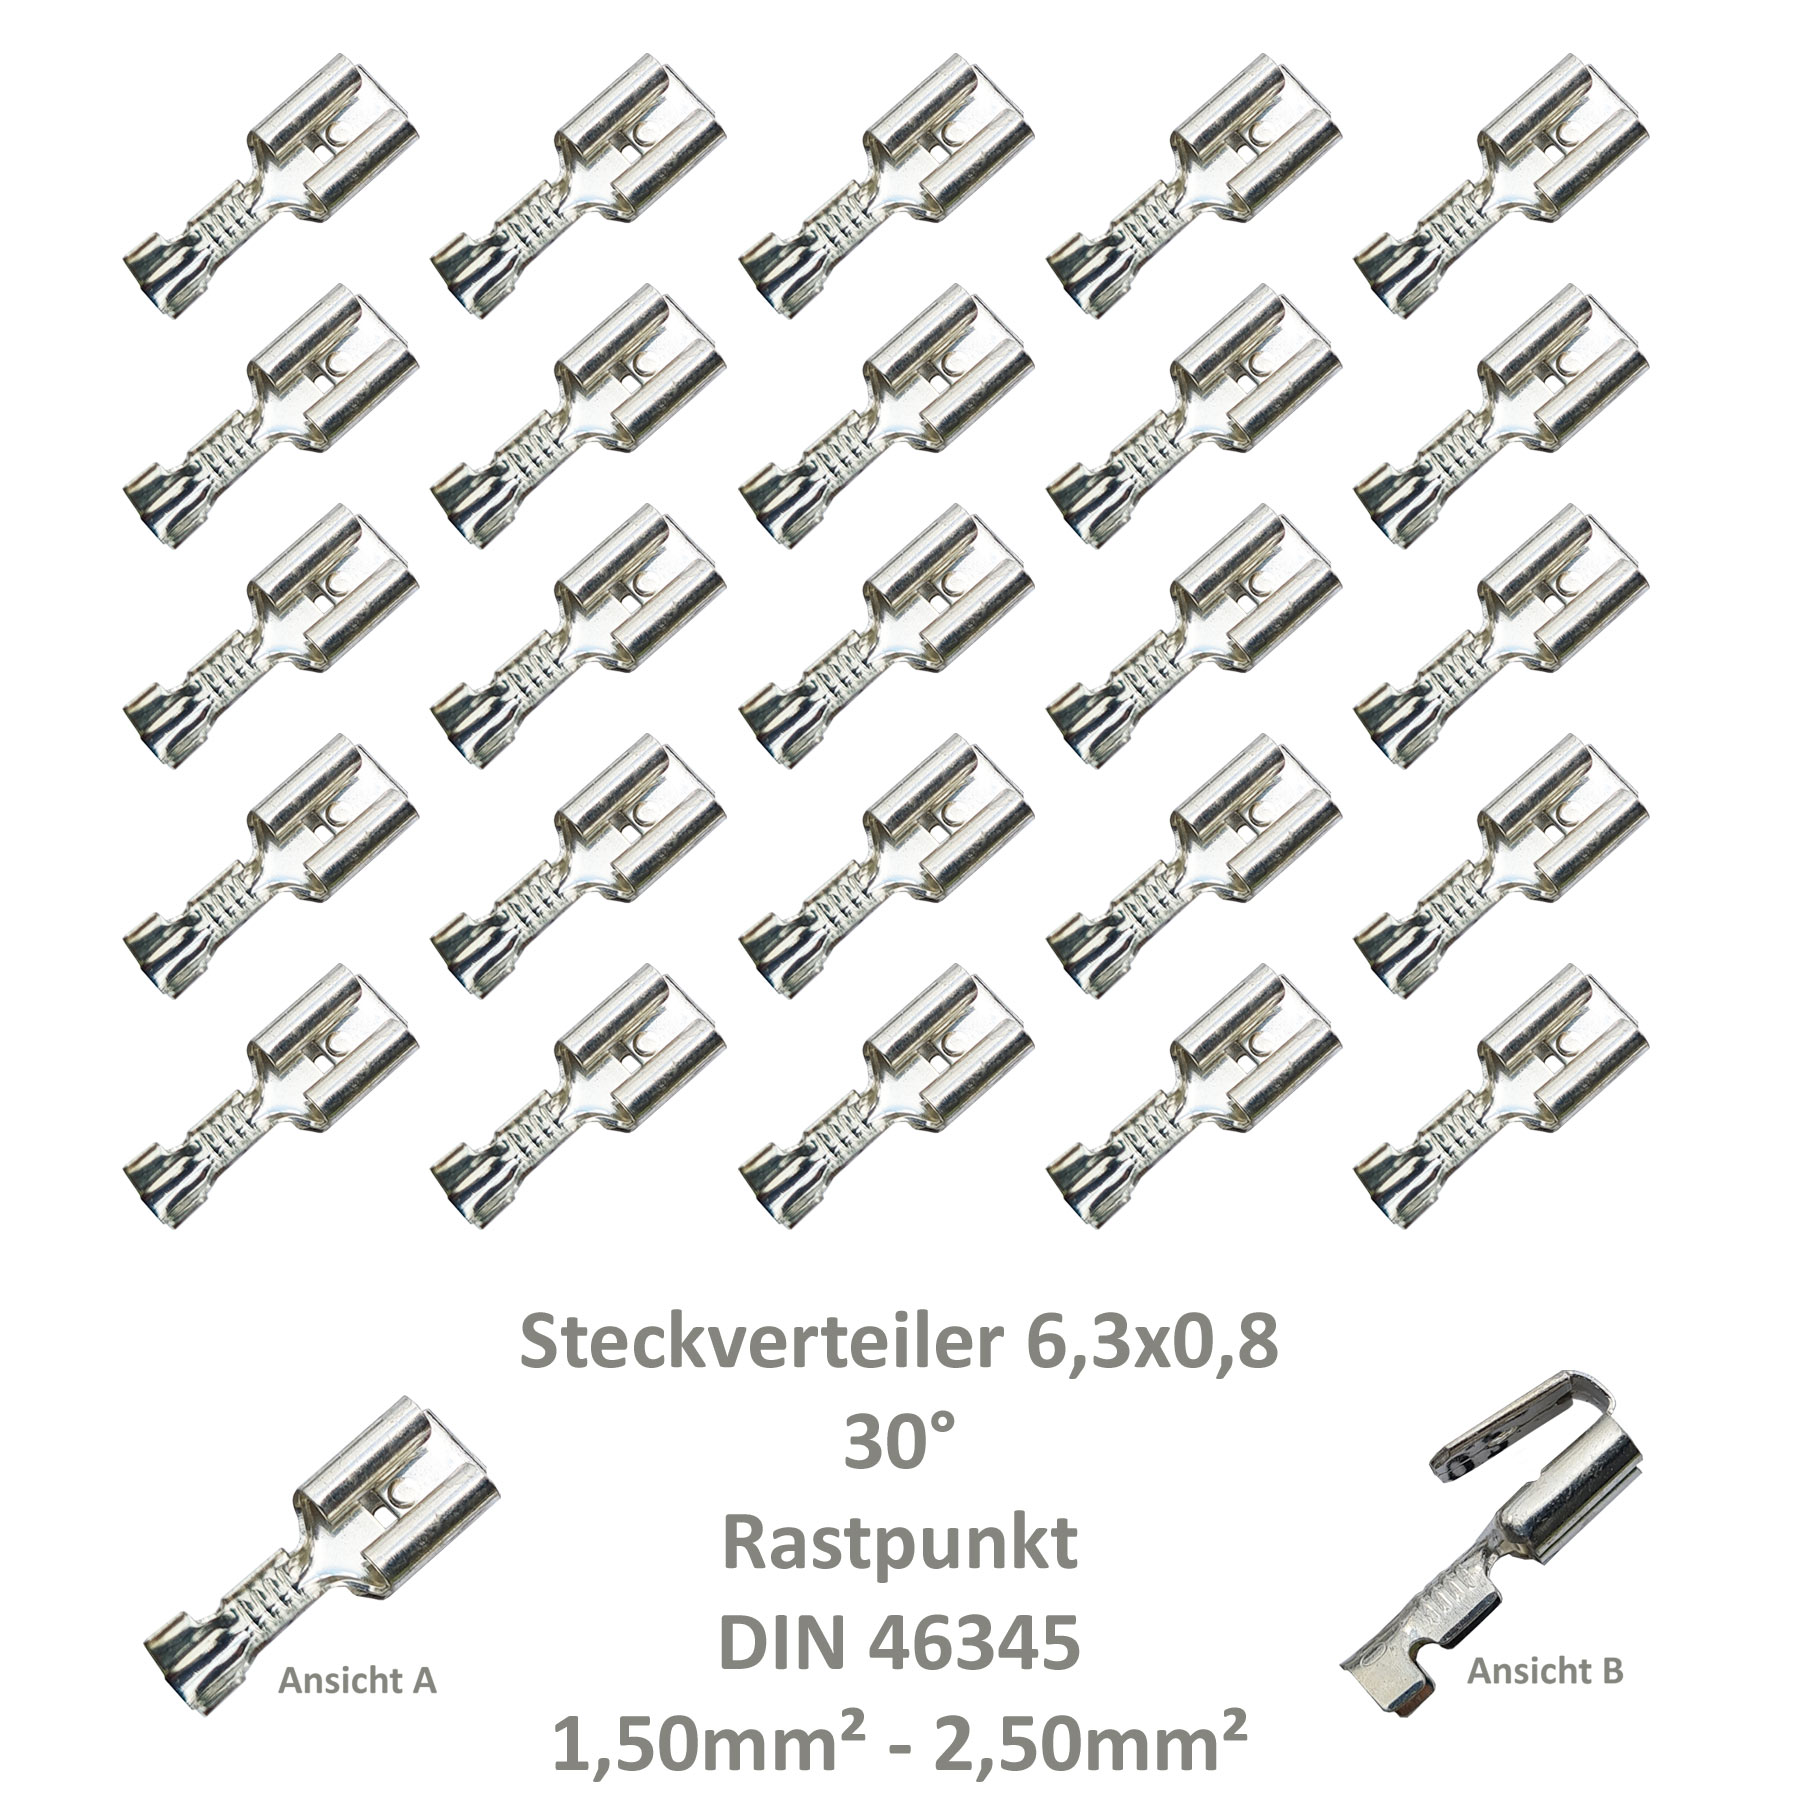 25 Steckverteiler Abzweiger Flachsteckhülse Flachstecker 6,3x0,8 1,5² DIN  46345